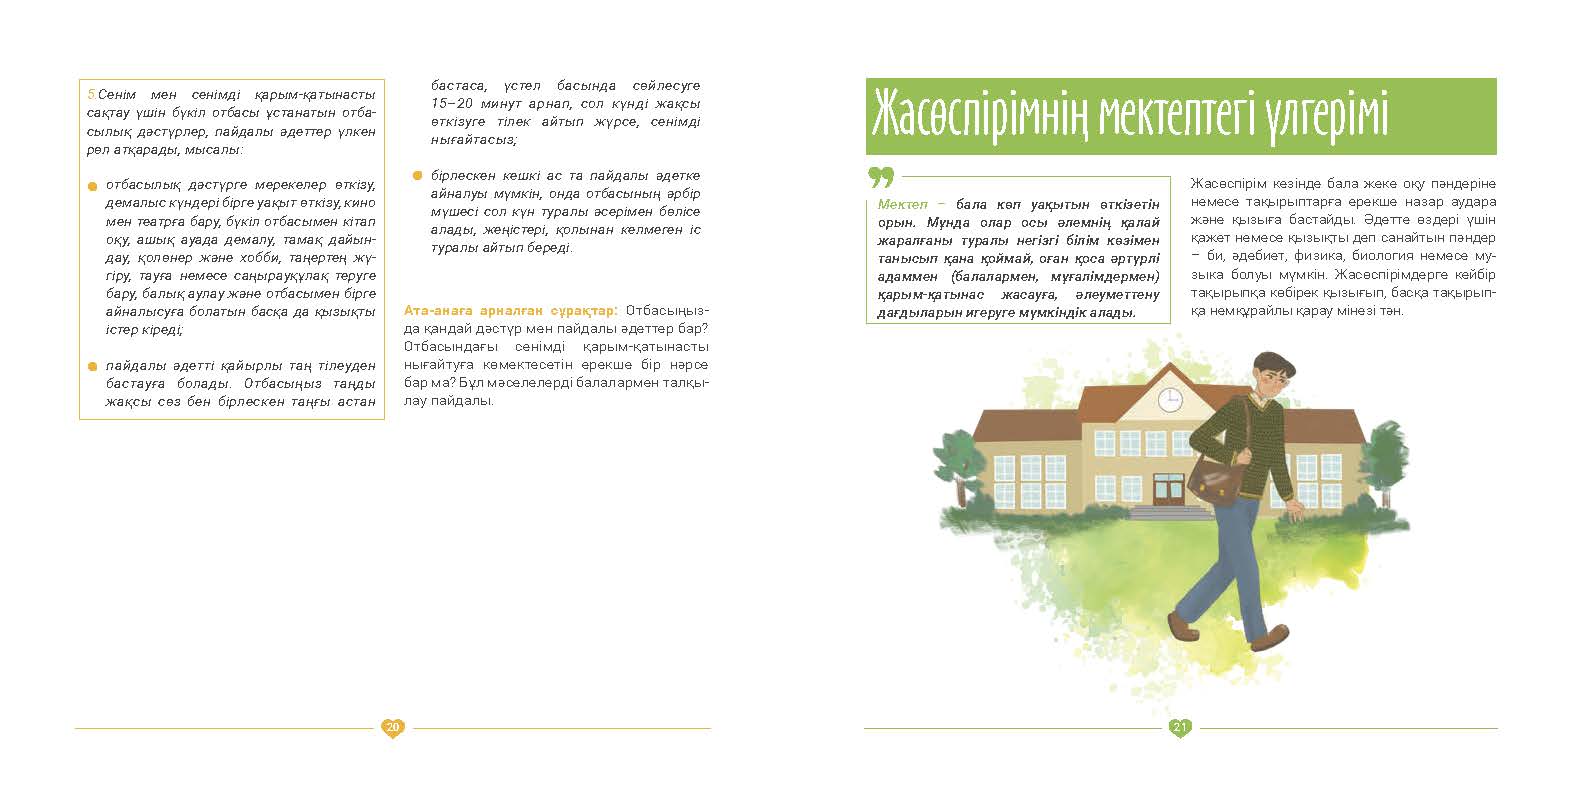 EVAC brochure KAZ (11).jpg